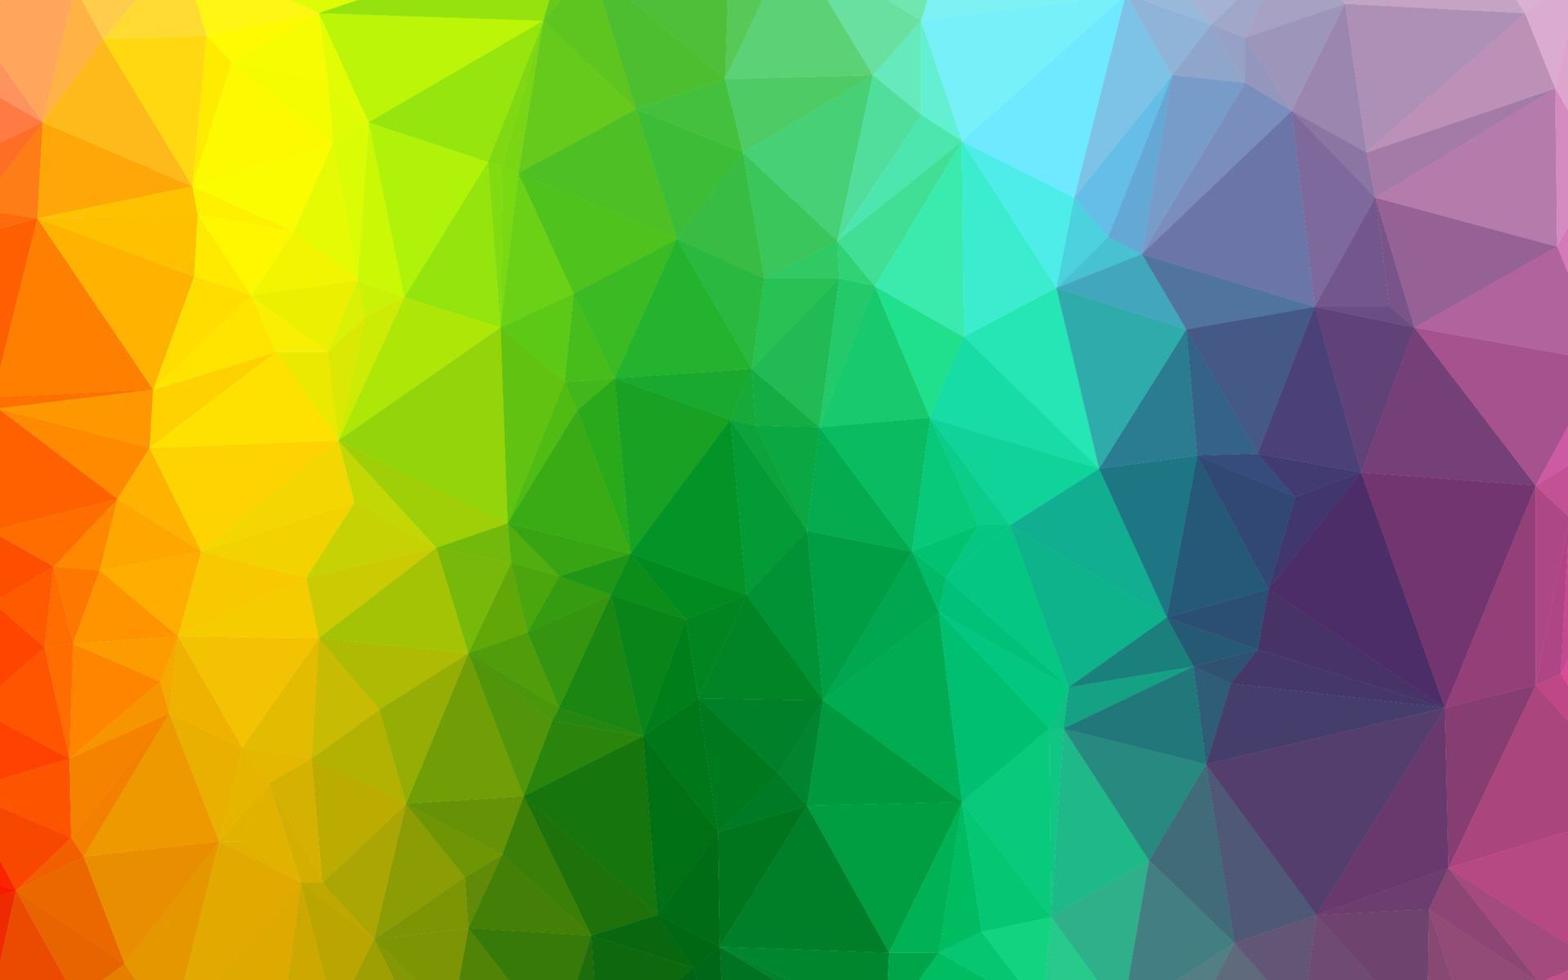 luz multicolor, padrão poligonal de vetor de arco-íris.